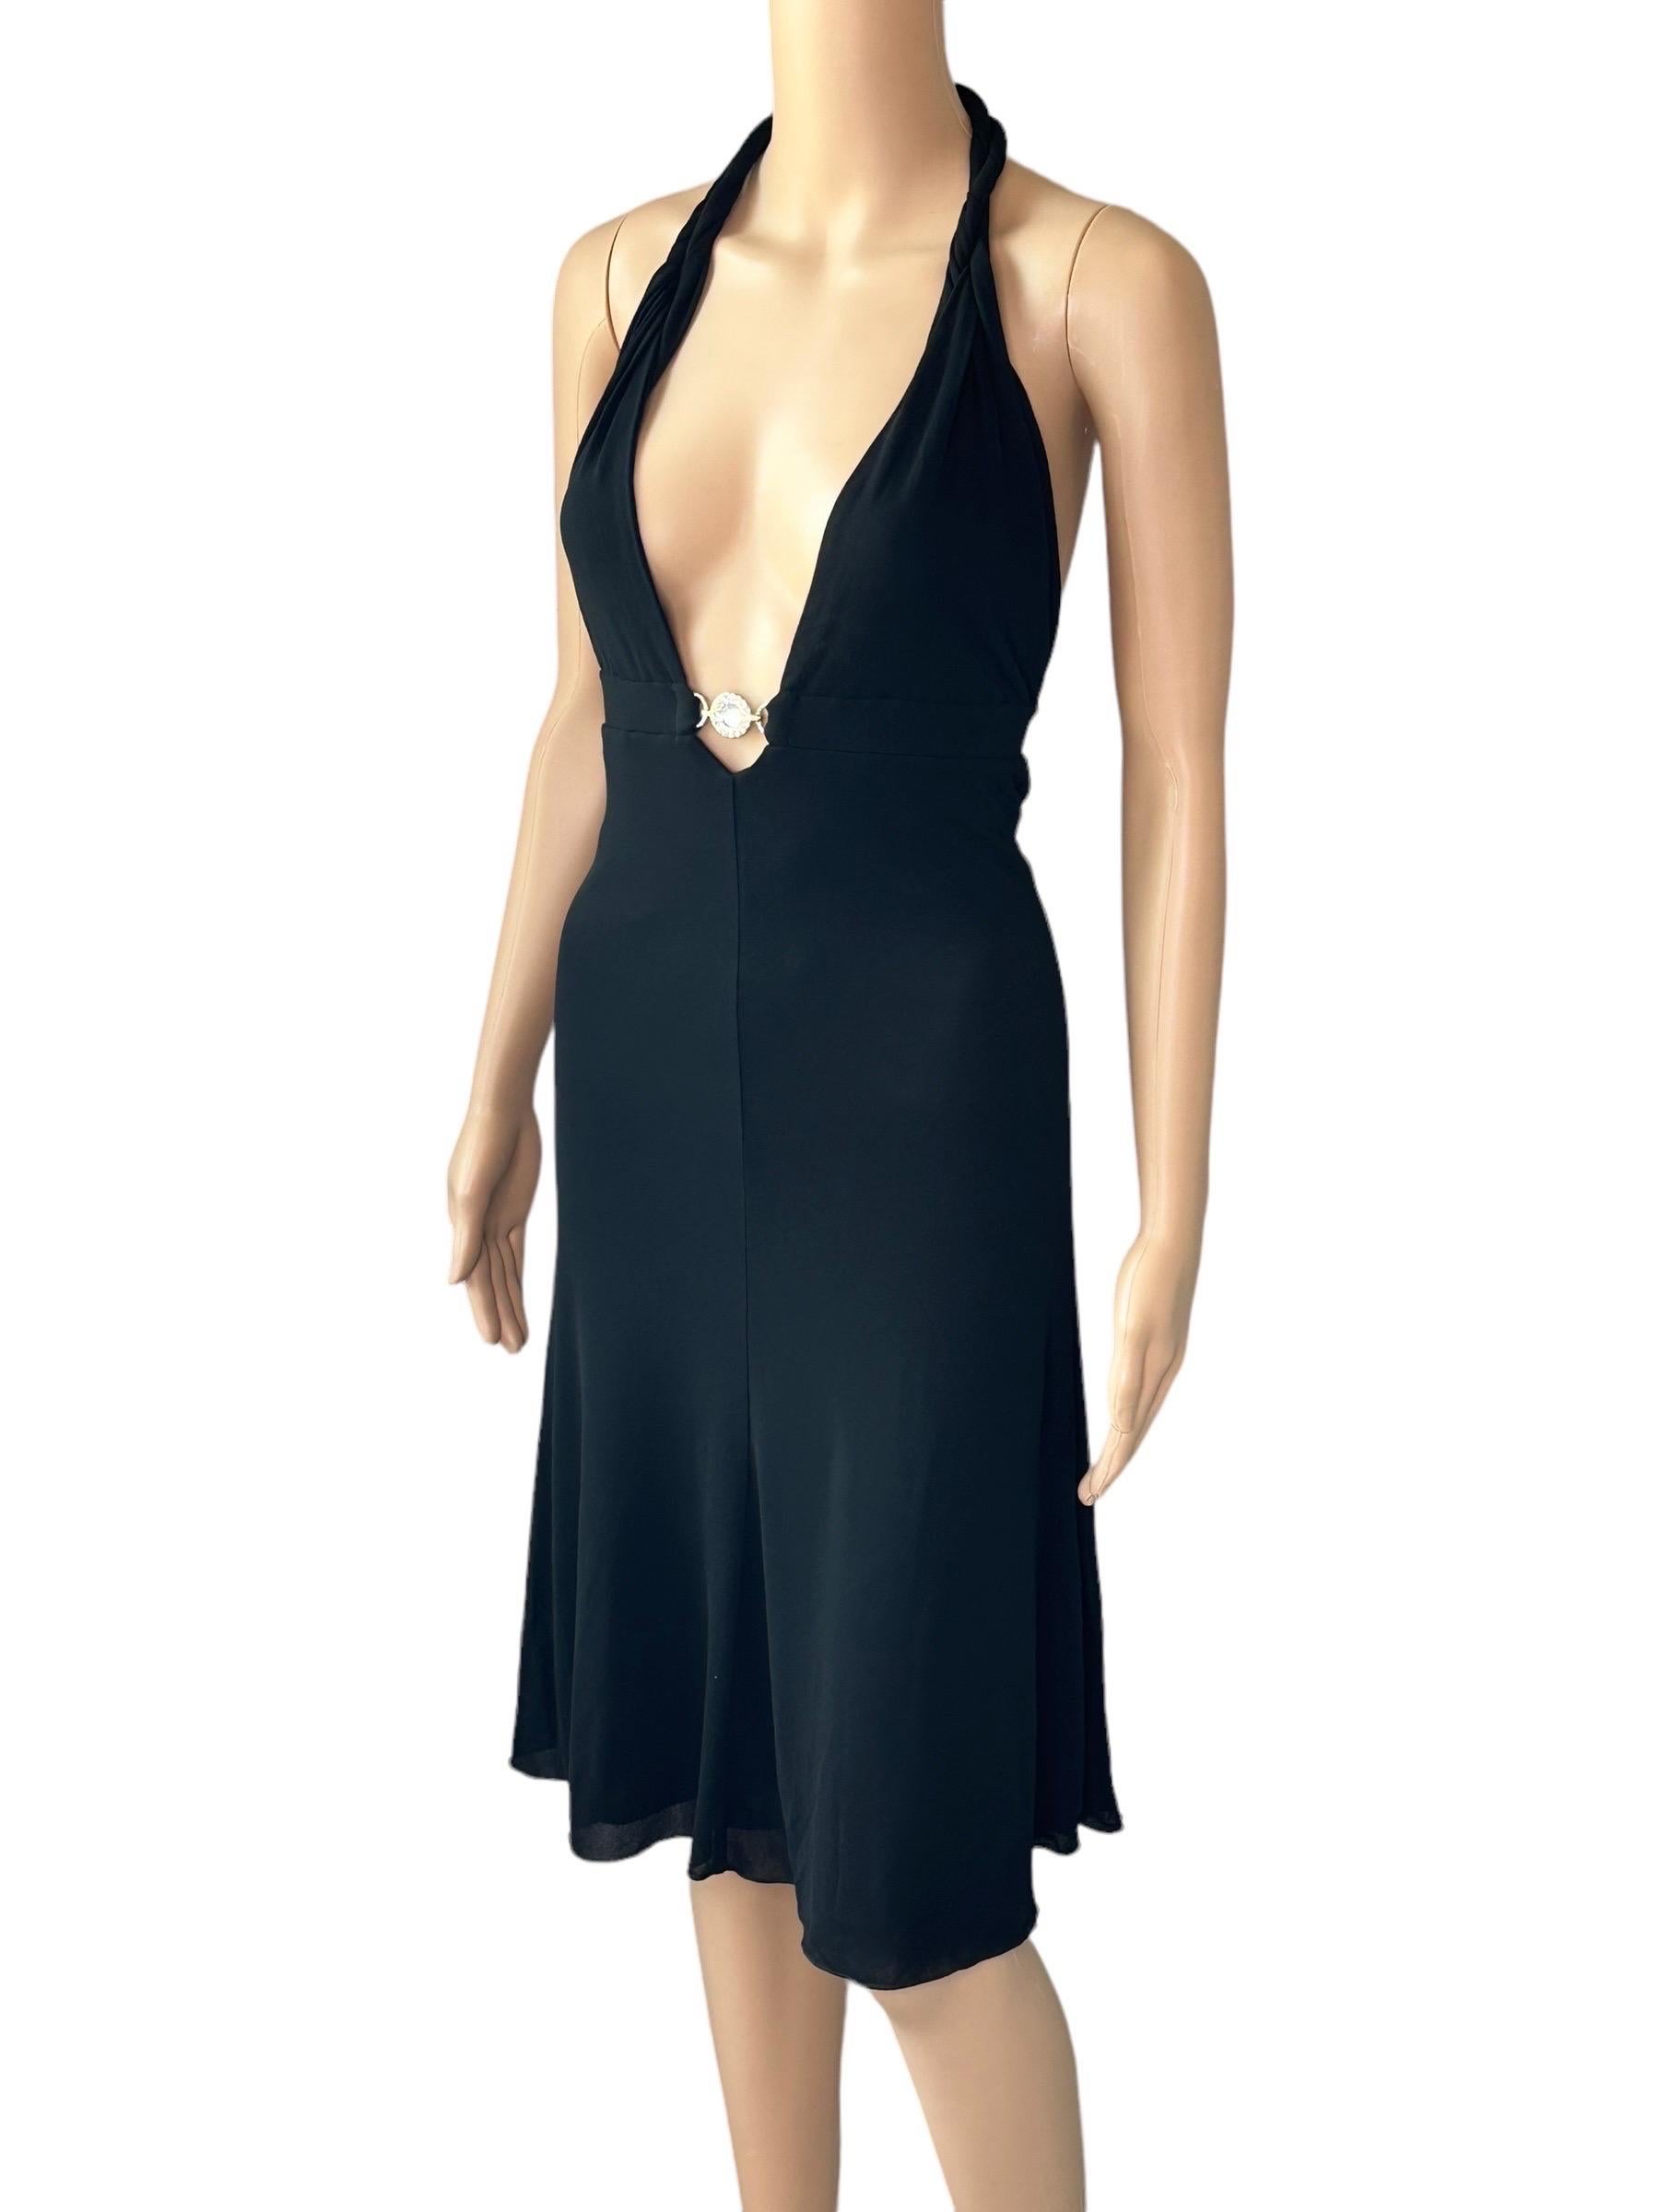 Versace S/S 2007 Crystal Logo Plunging Neckline Backless Halter Black Dress For Sale 9